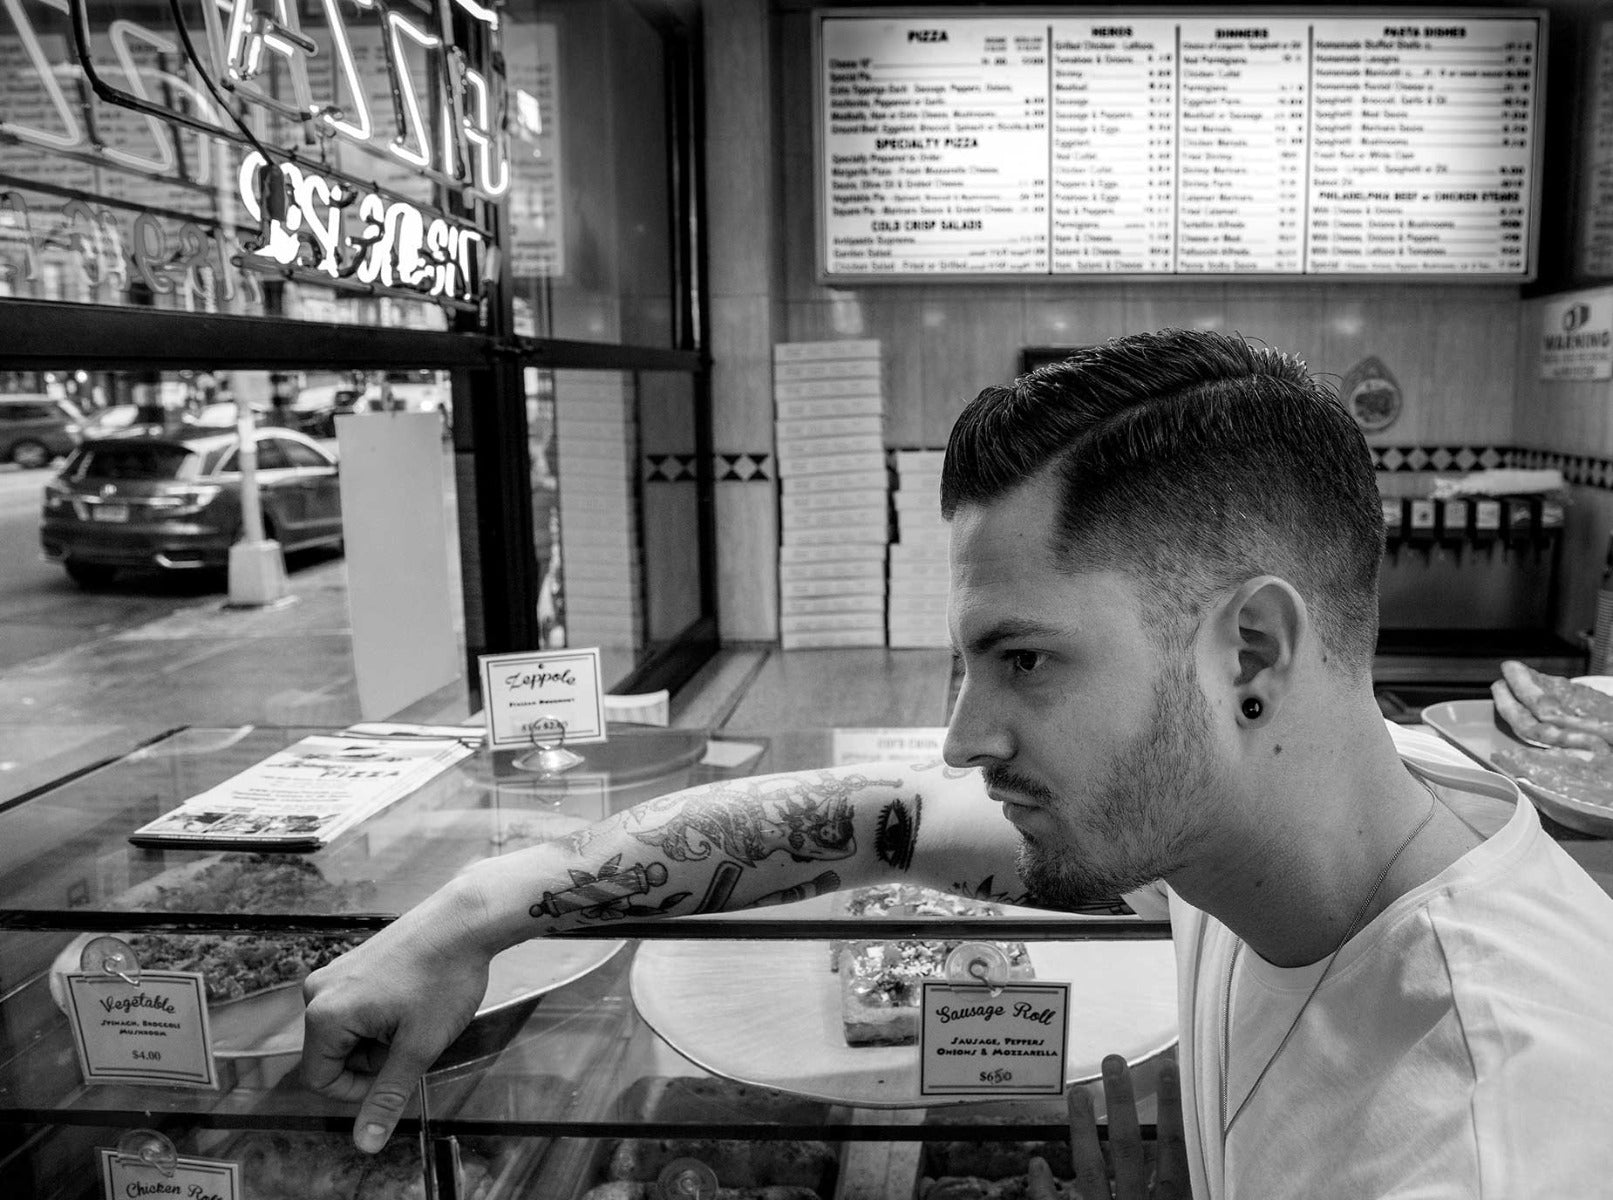 Man looking at pizzas